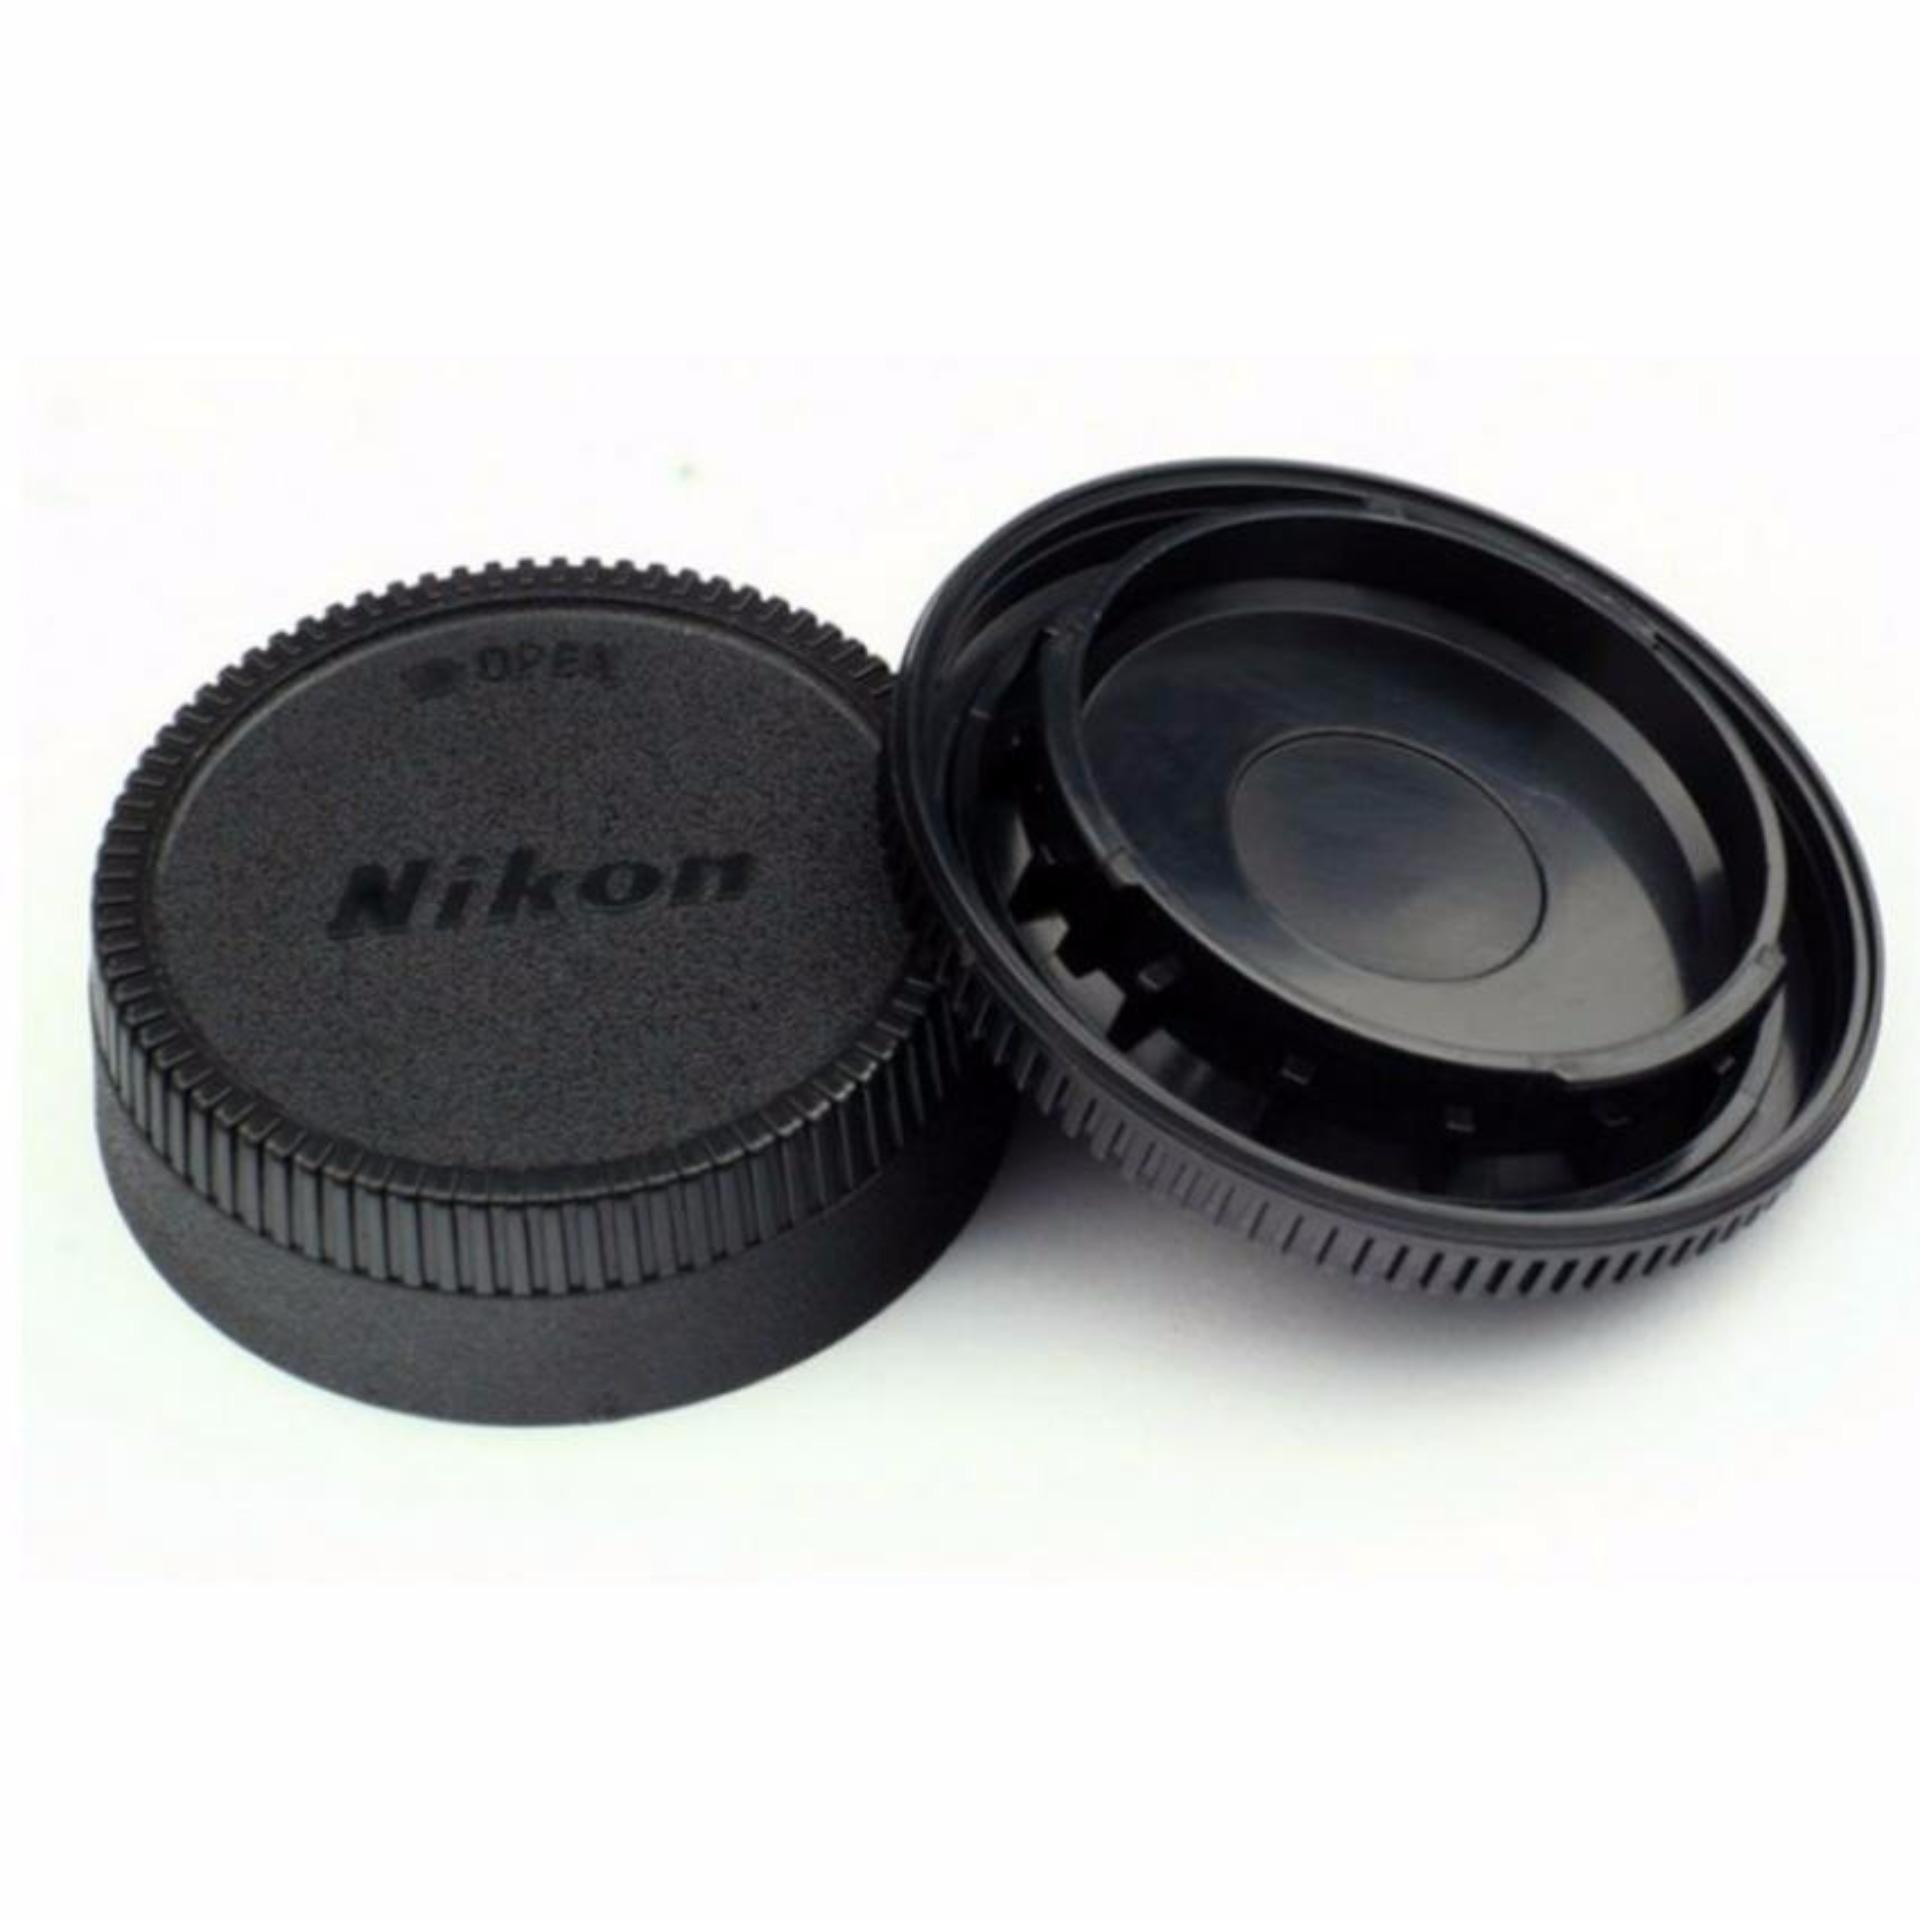 Bộ cap body và cap lens cho máy Nikon